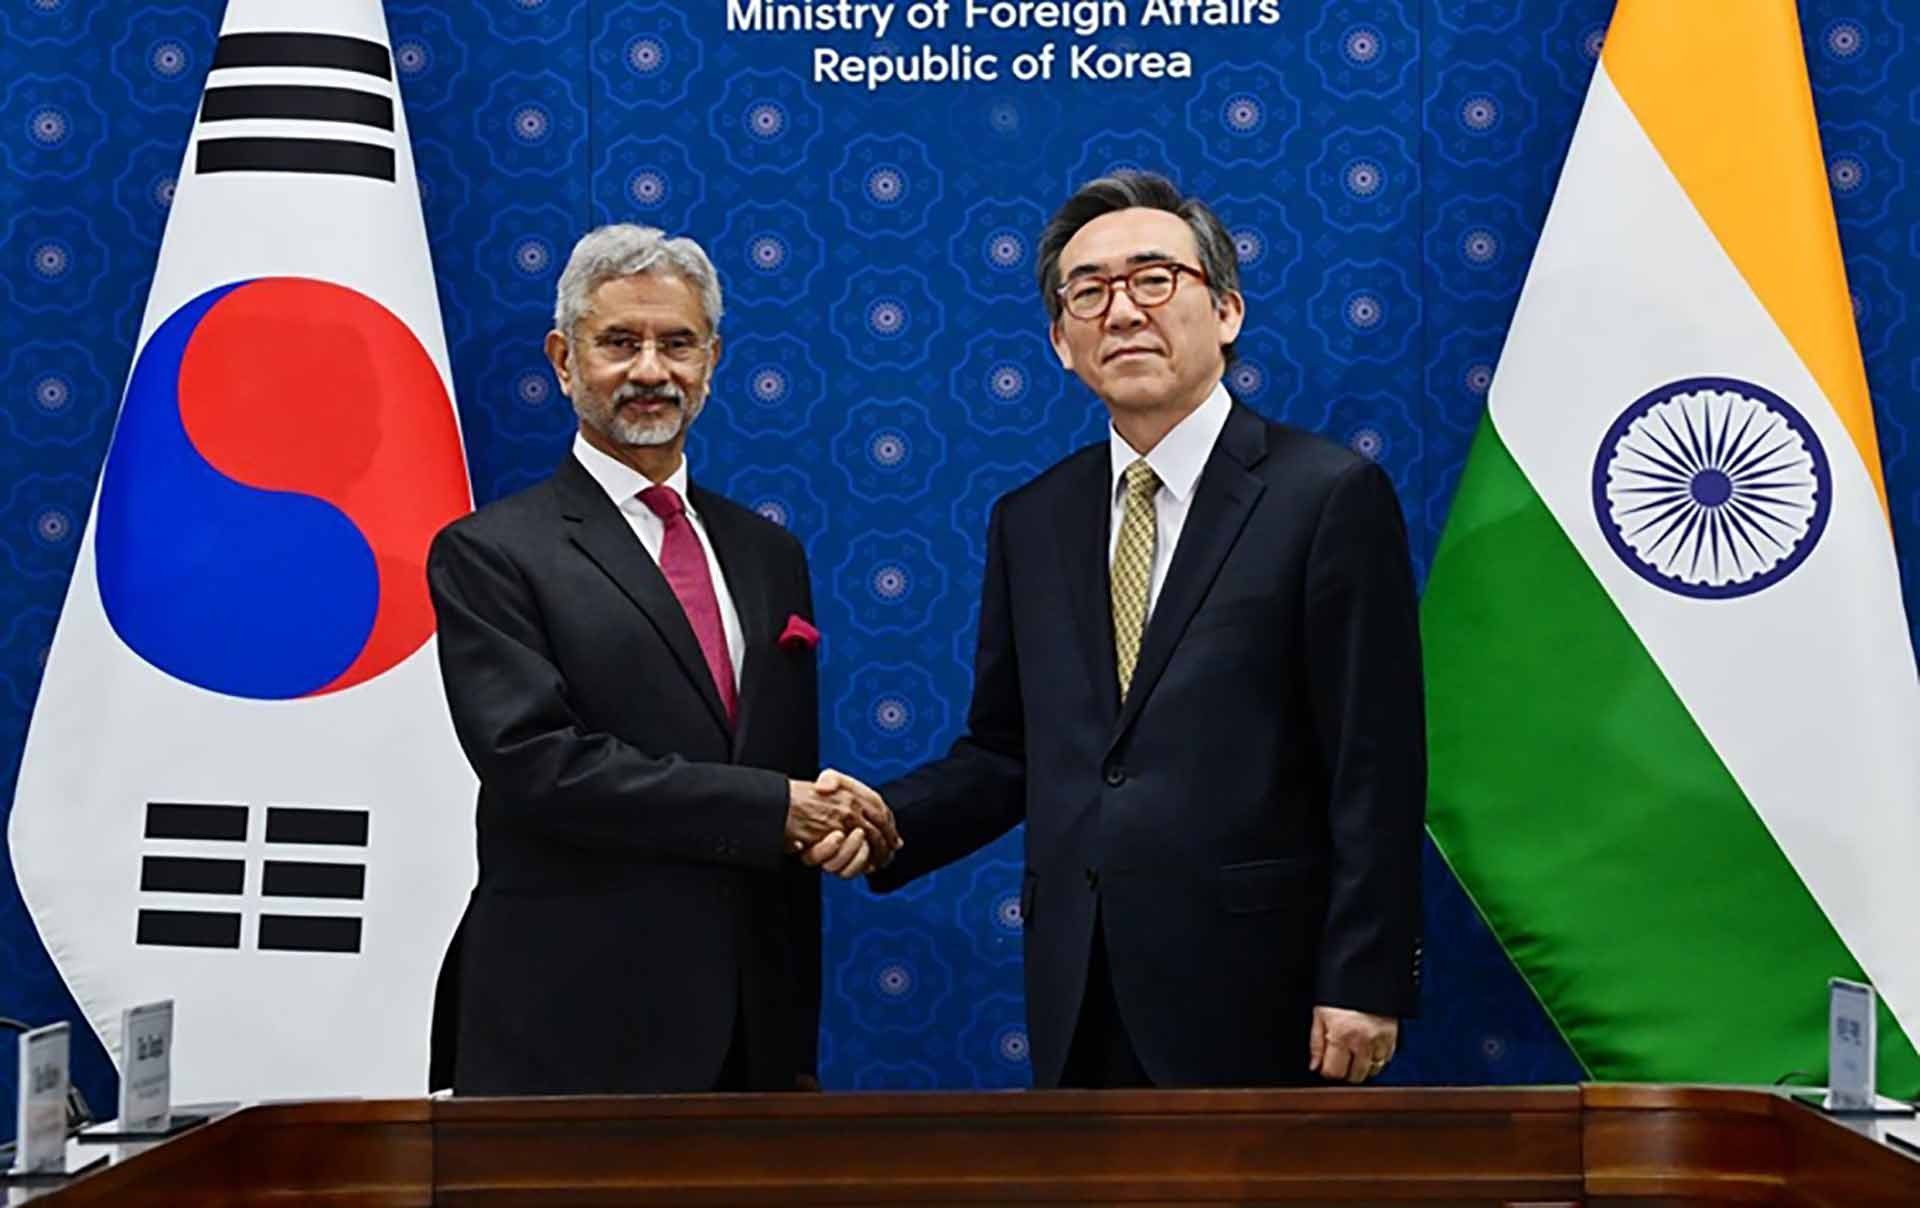 Ngoại trưởng S Jaishankar và người đồng cấp Cho Tae-yul đồng chủ trì cuộc họp Ủy ban hỗn hợp Ấn Độ - Hàn Quốc lần thứ 10. (Nguồn: TRN)